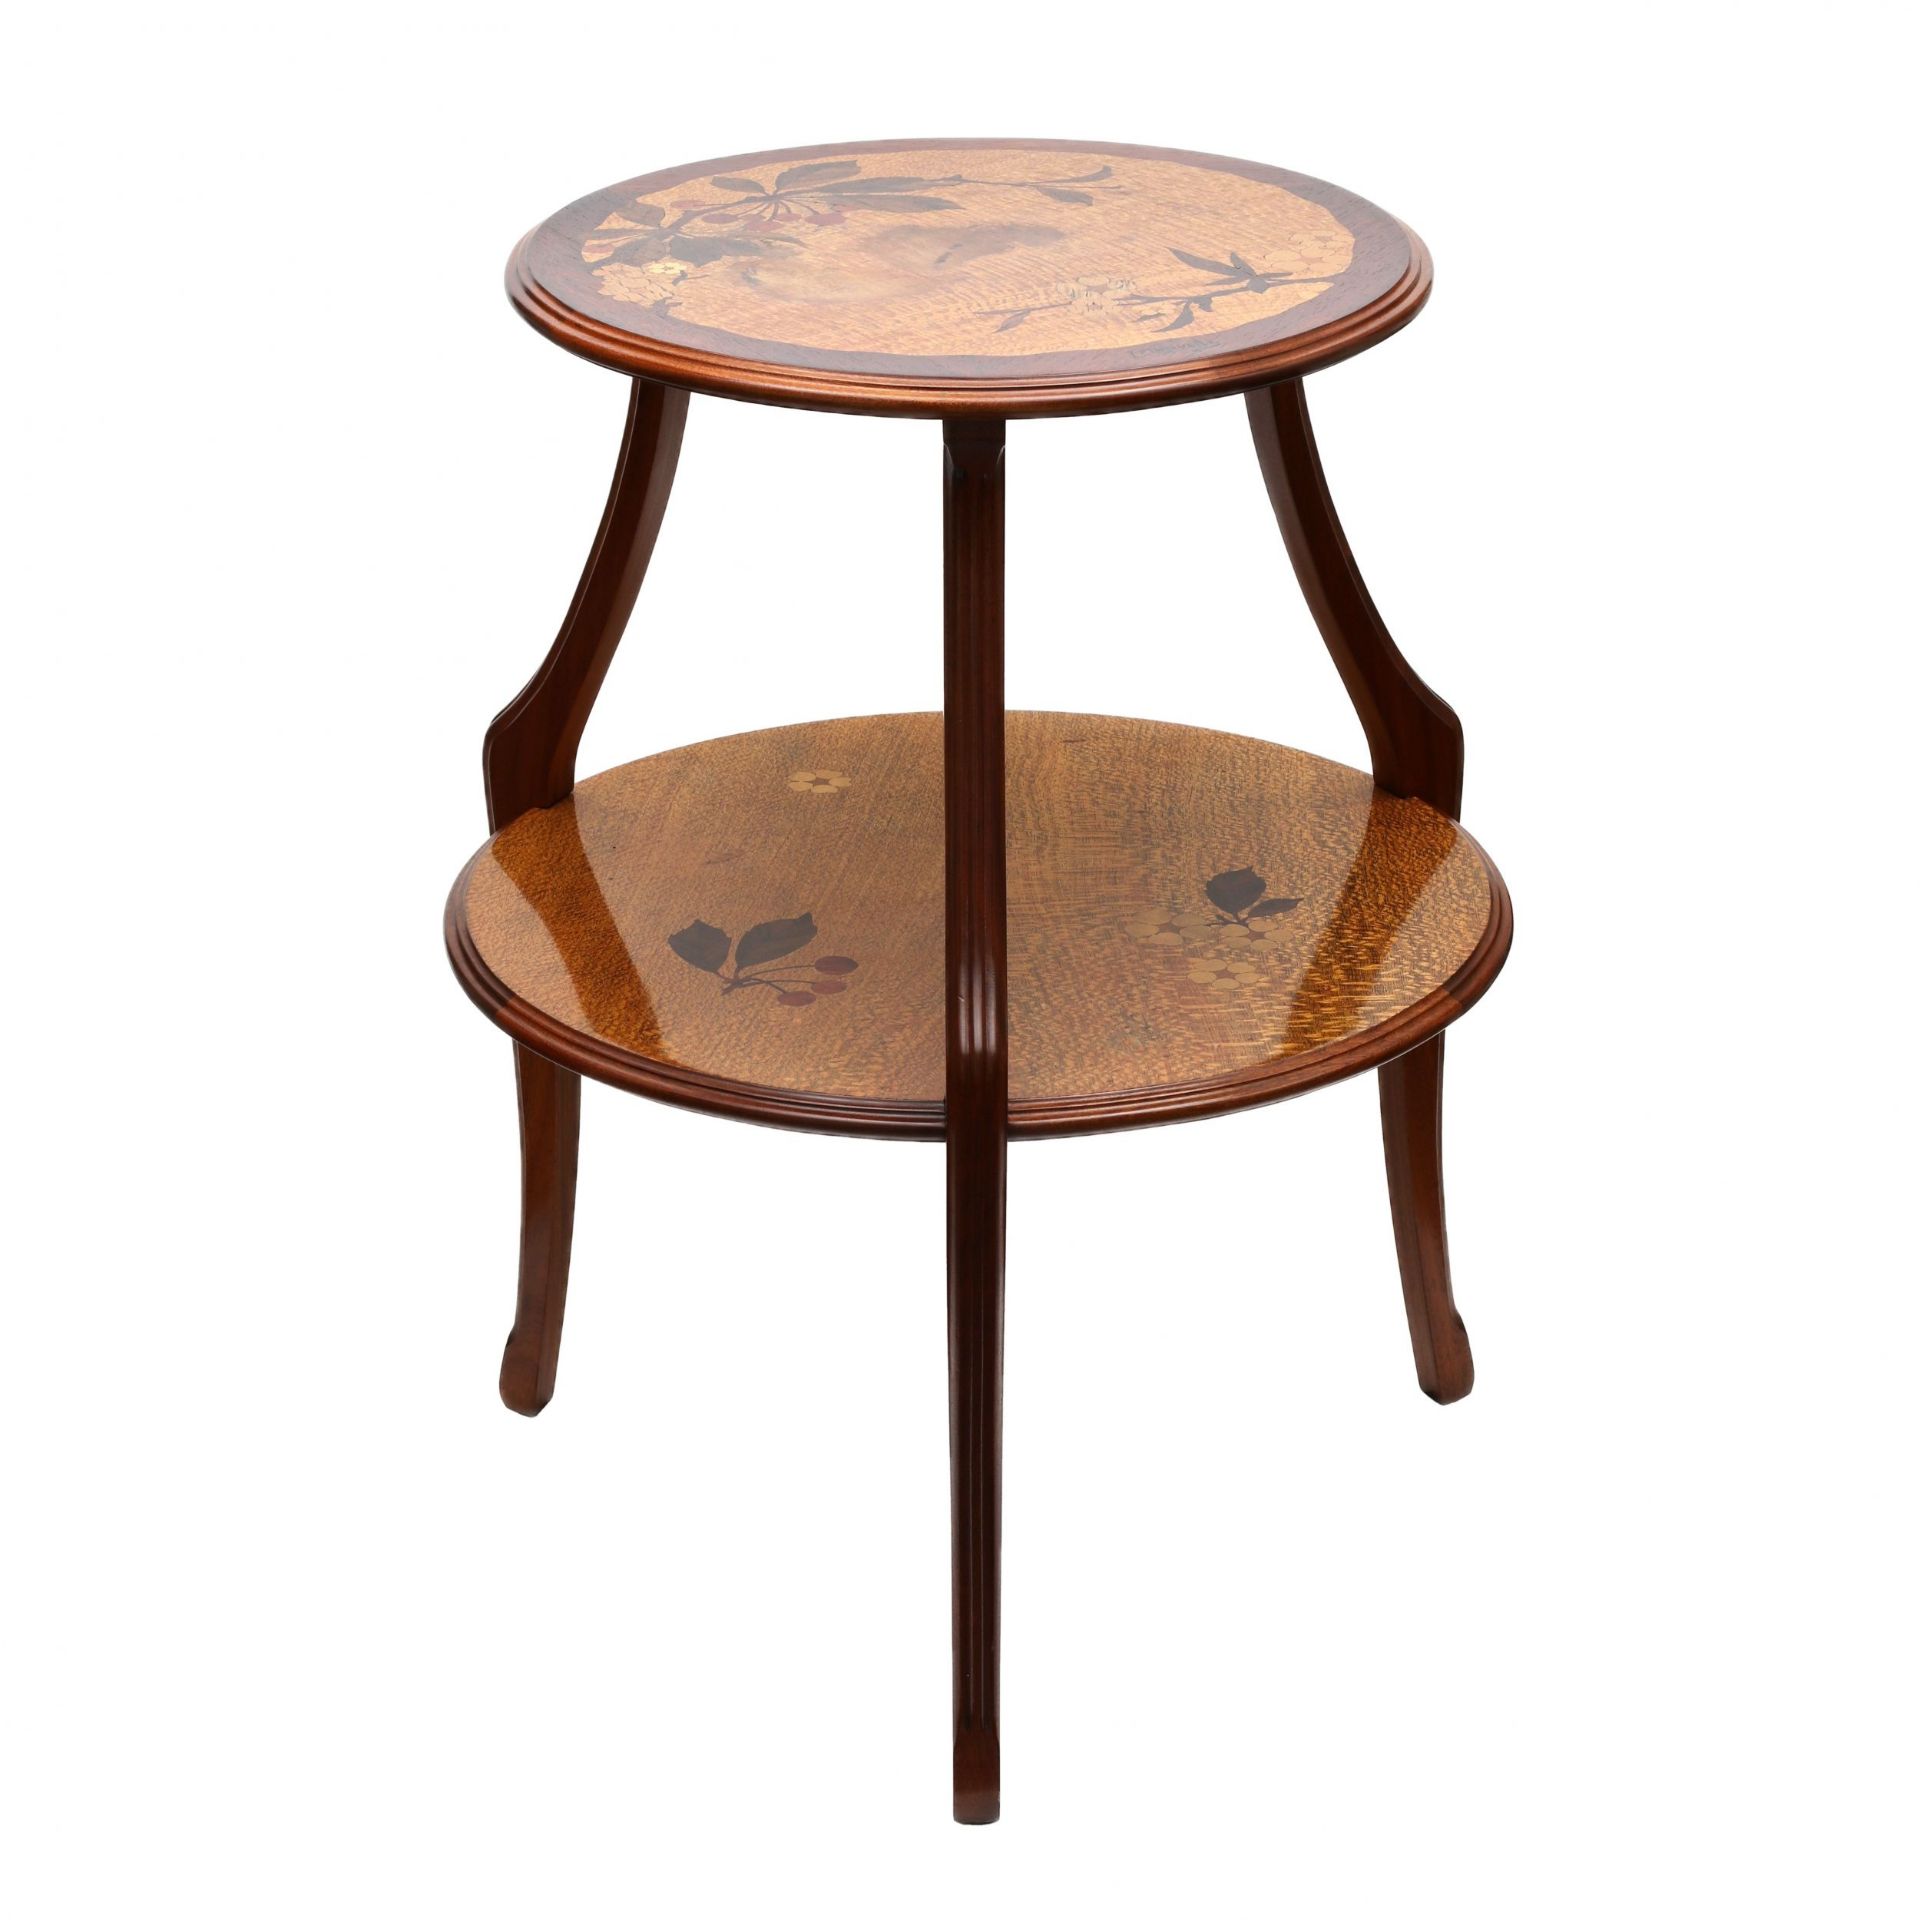 Boudoir table Art Nouveau, inlaid wood. Louis MAJORELLE (1859-1926). - Image 2 of 6